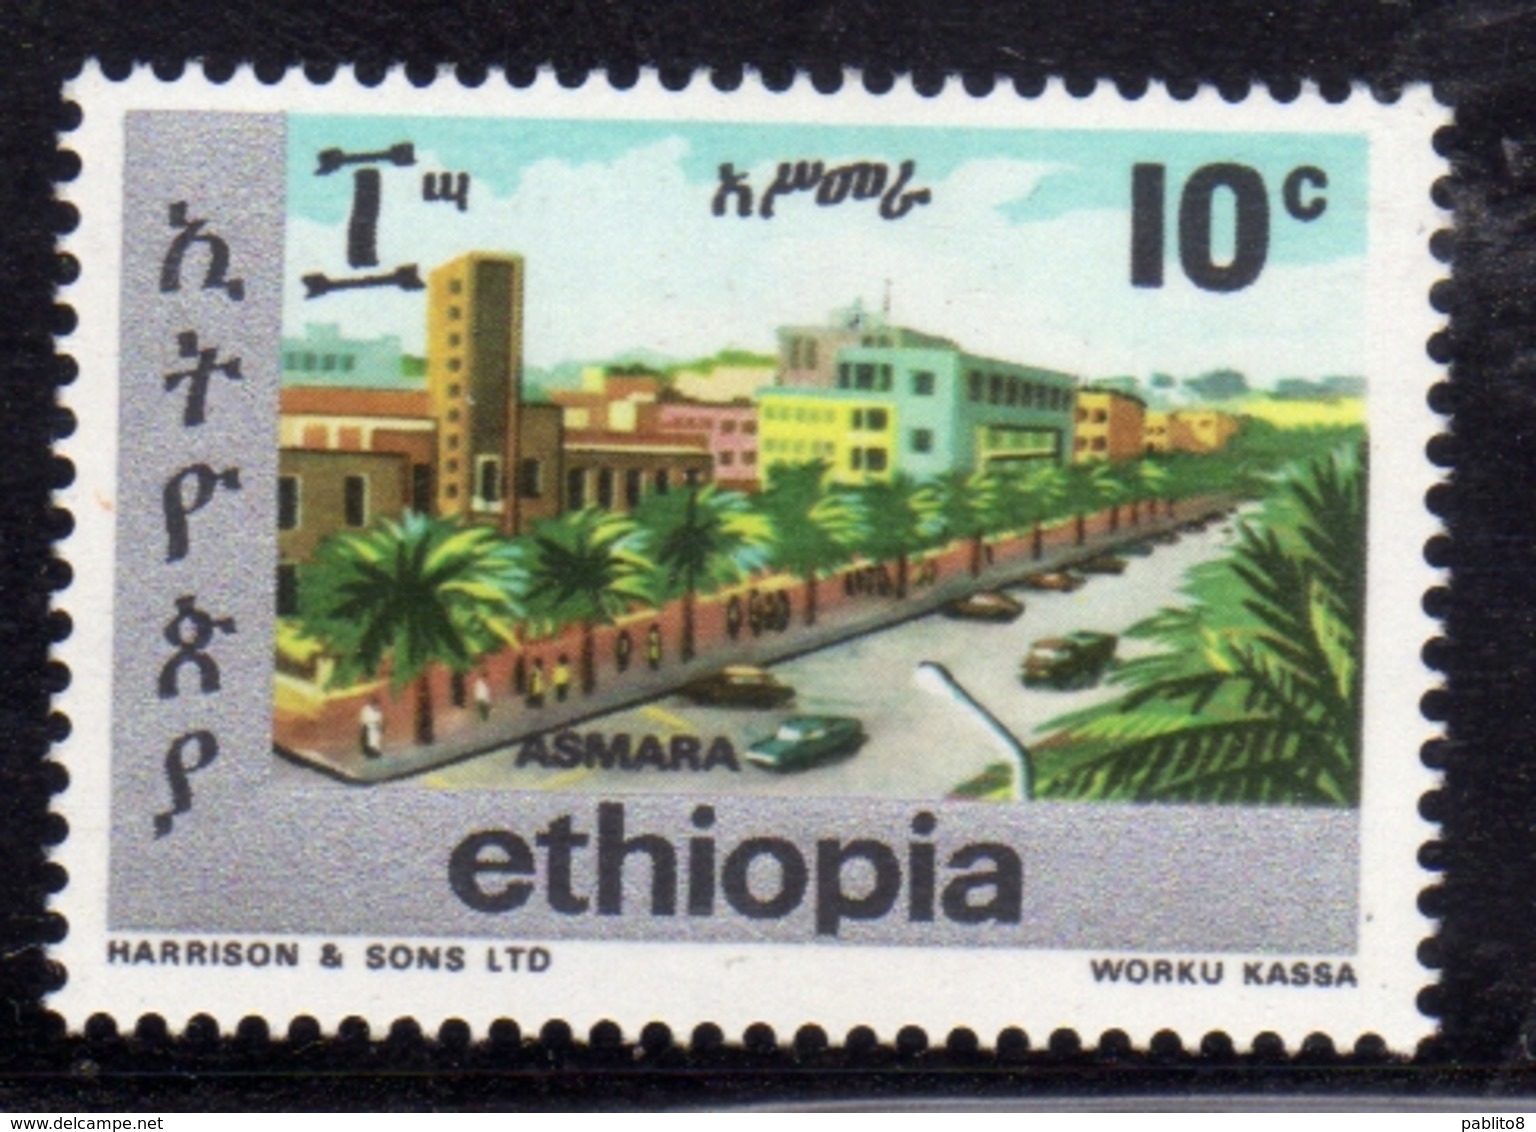 ETHIOPIA ETIOPIA ETHIOPIE 1977 TOWNS OF ADDIS ASMARA CENT. 10c MNH - Ethiopie